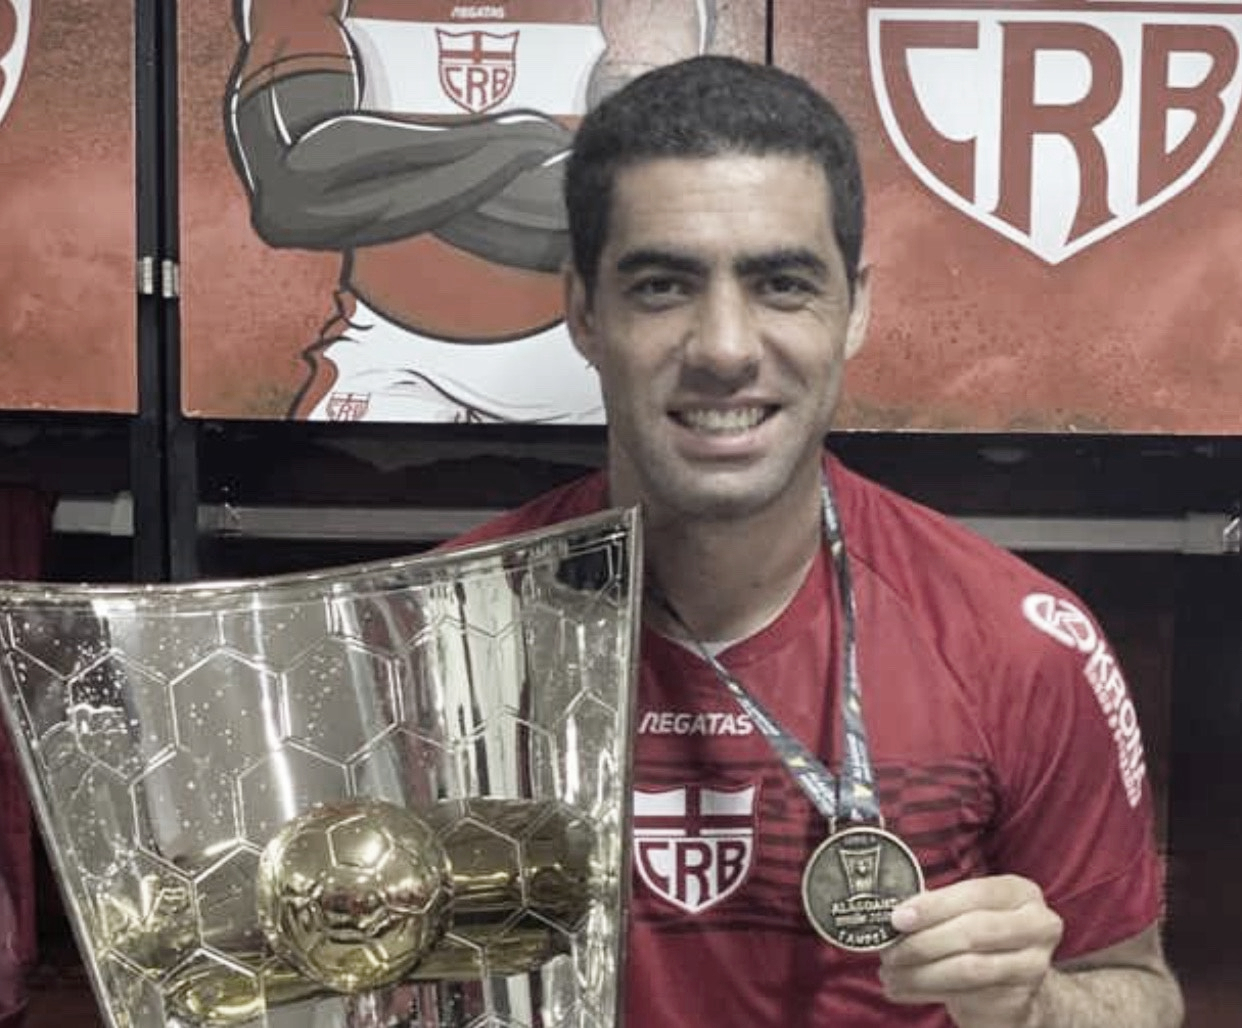 Campeão alagoano pelo CRB, Xandão acredita em bom desempenho na Série B: "Entraremos motivados"